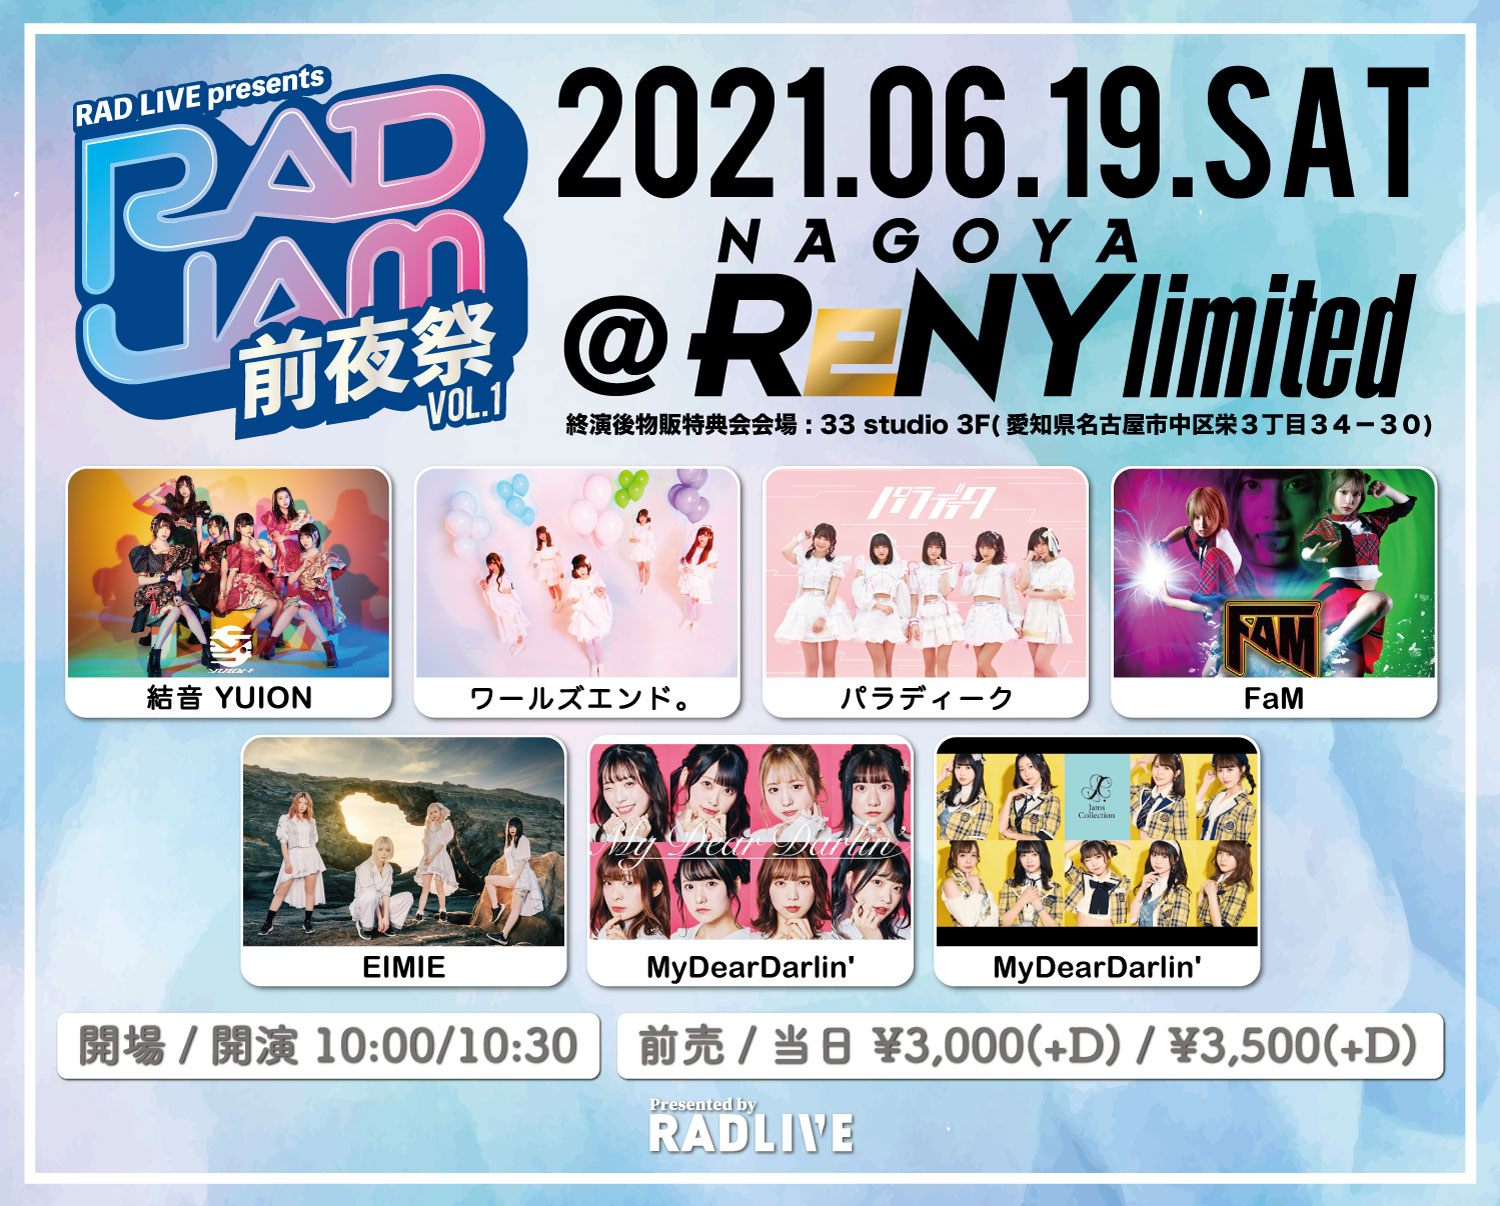 RAD JAM前夜祭 at ReNY limited vol.1